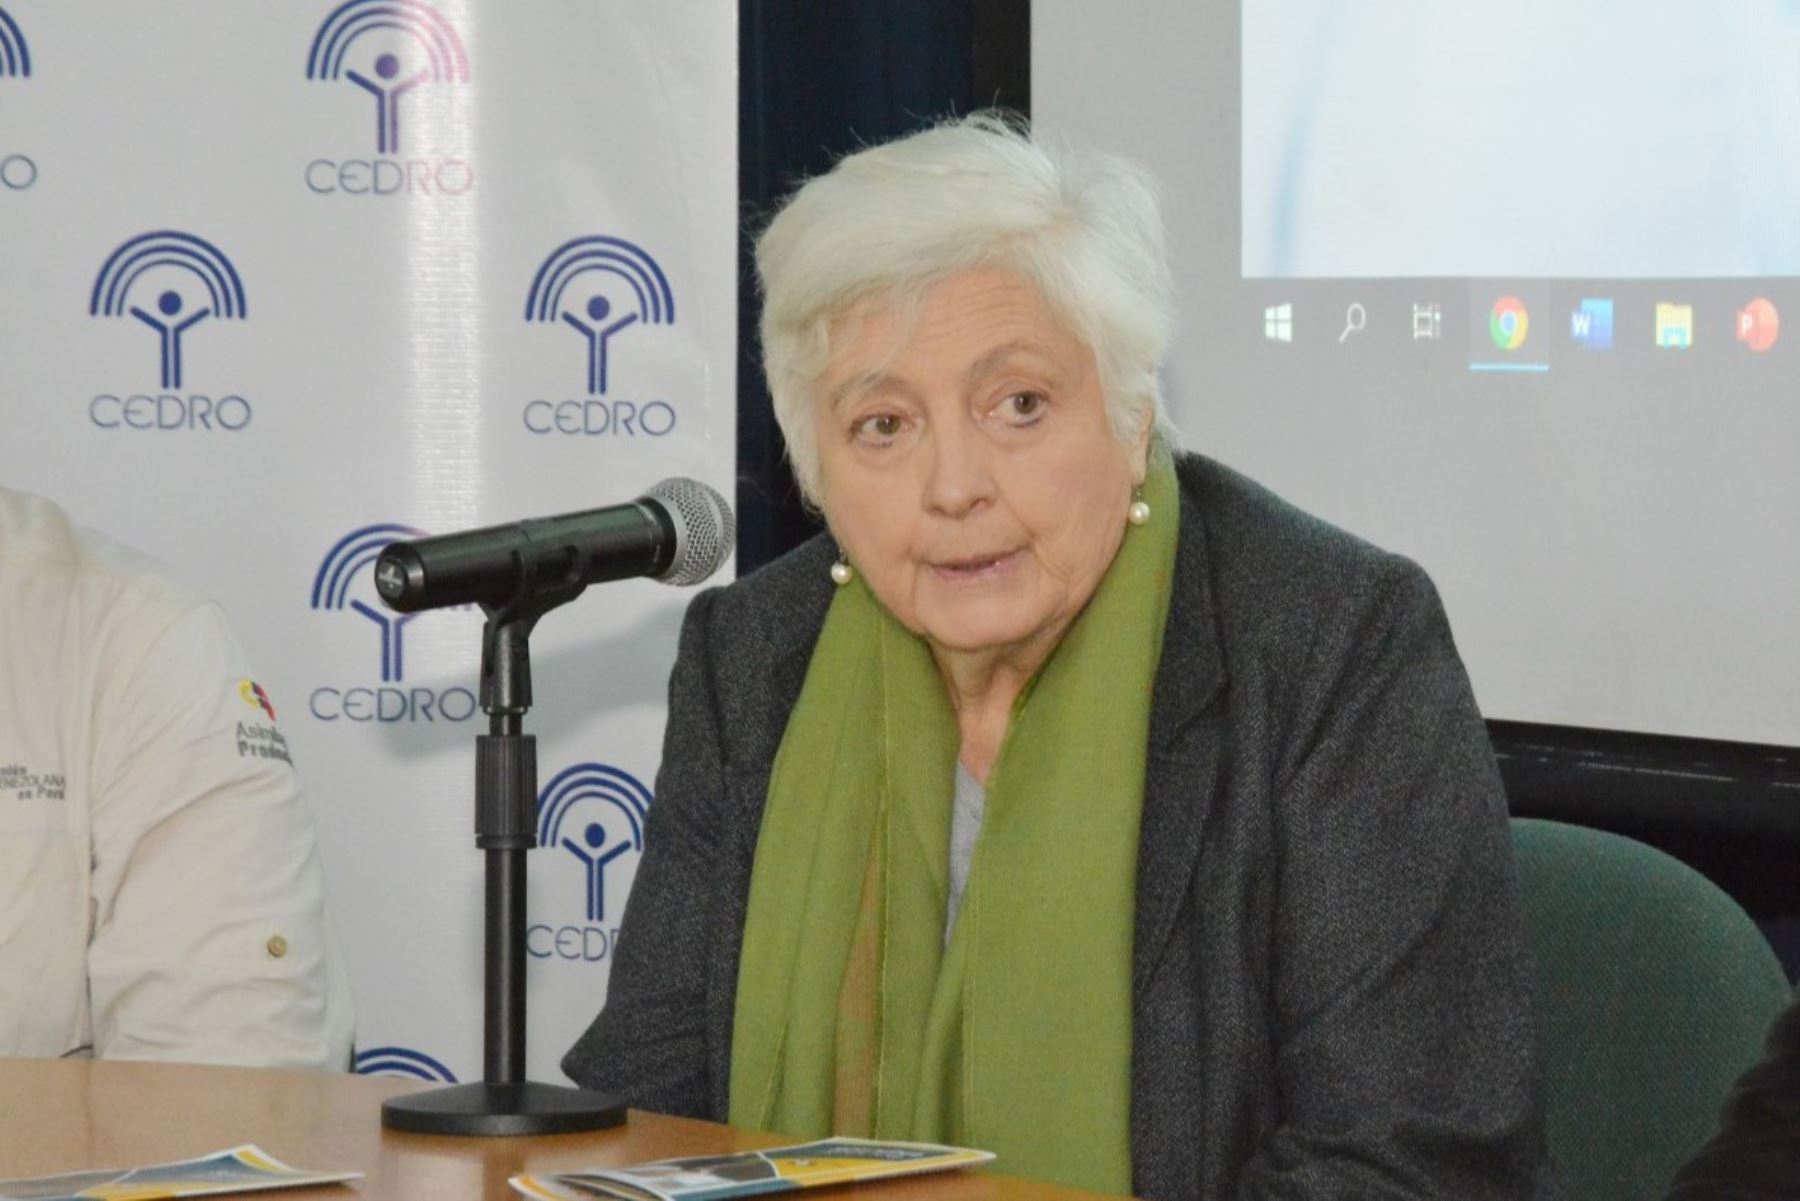 Directora de Cedro, Carmen Masías Claux, exhorta a denunciar la violencia contra la mujer en todas sus formas. Foto: CEDRO/Difusión.